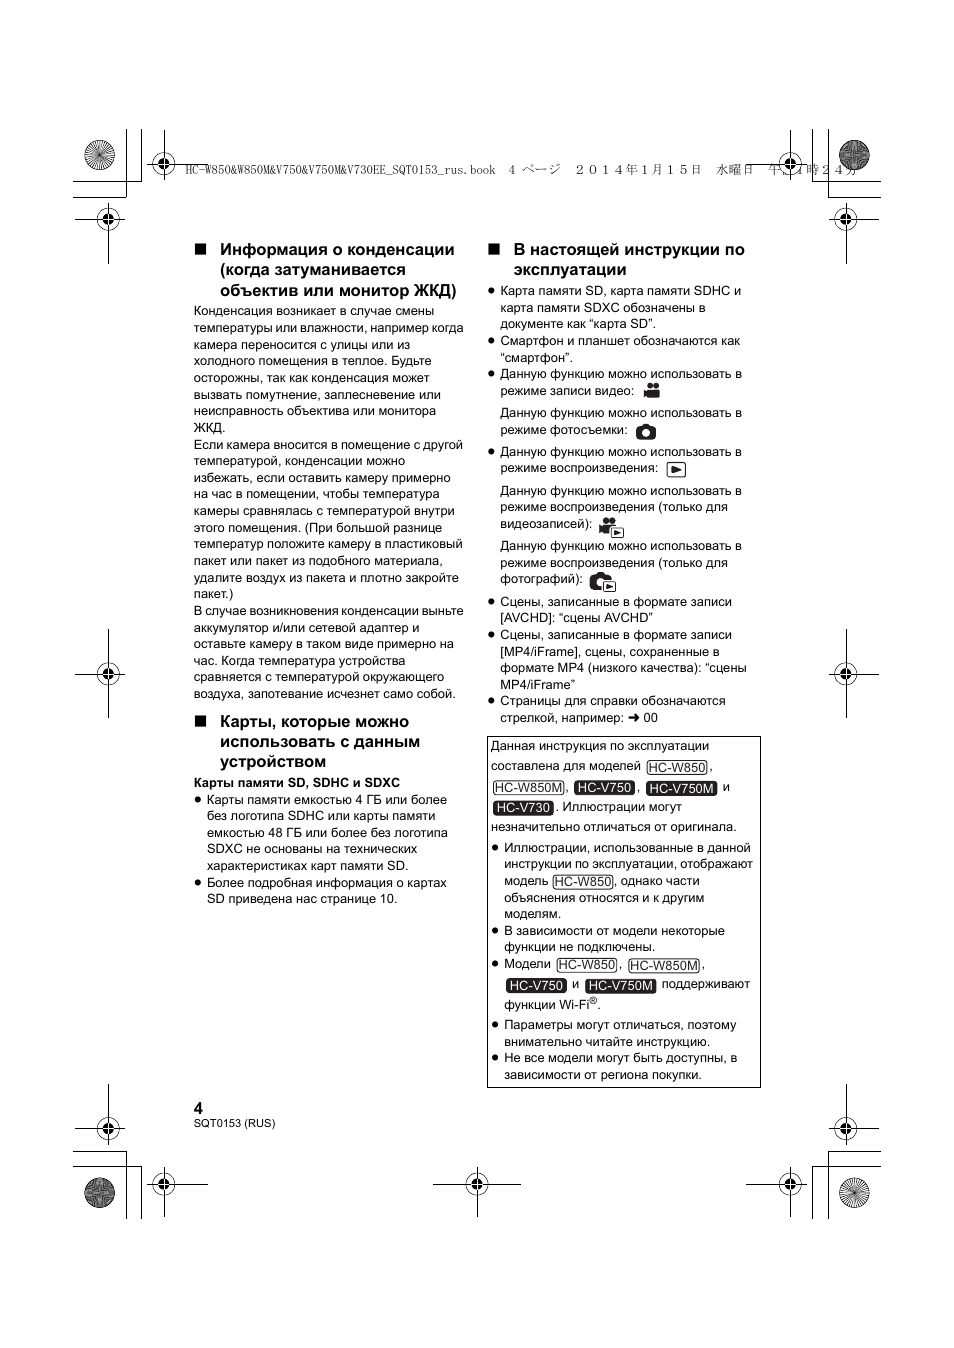 В настоящей инструкции по эксплуатации | Инструкция по эксплуатации Panasonic HC-V730 | Страница 4 / 32